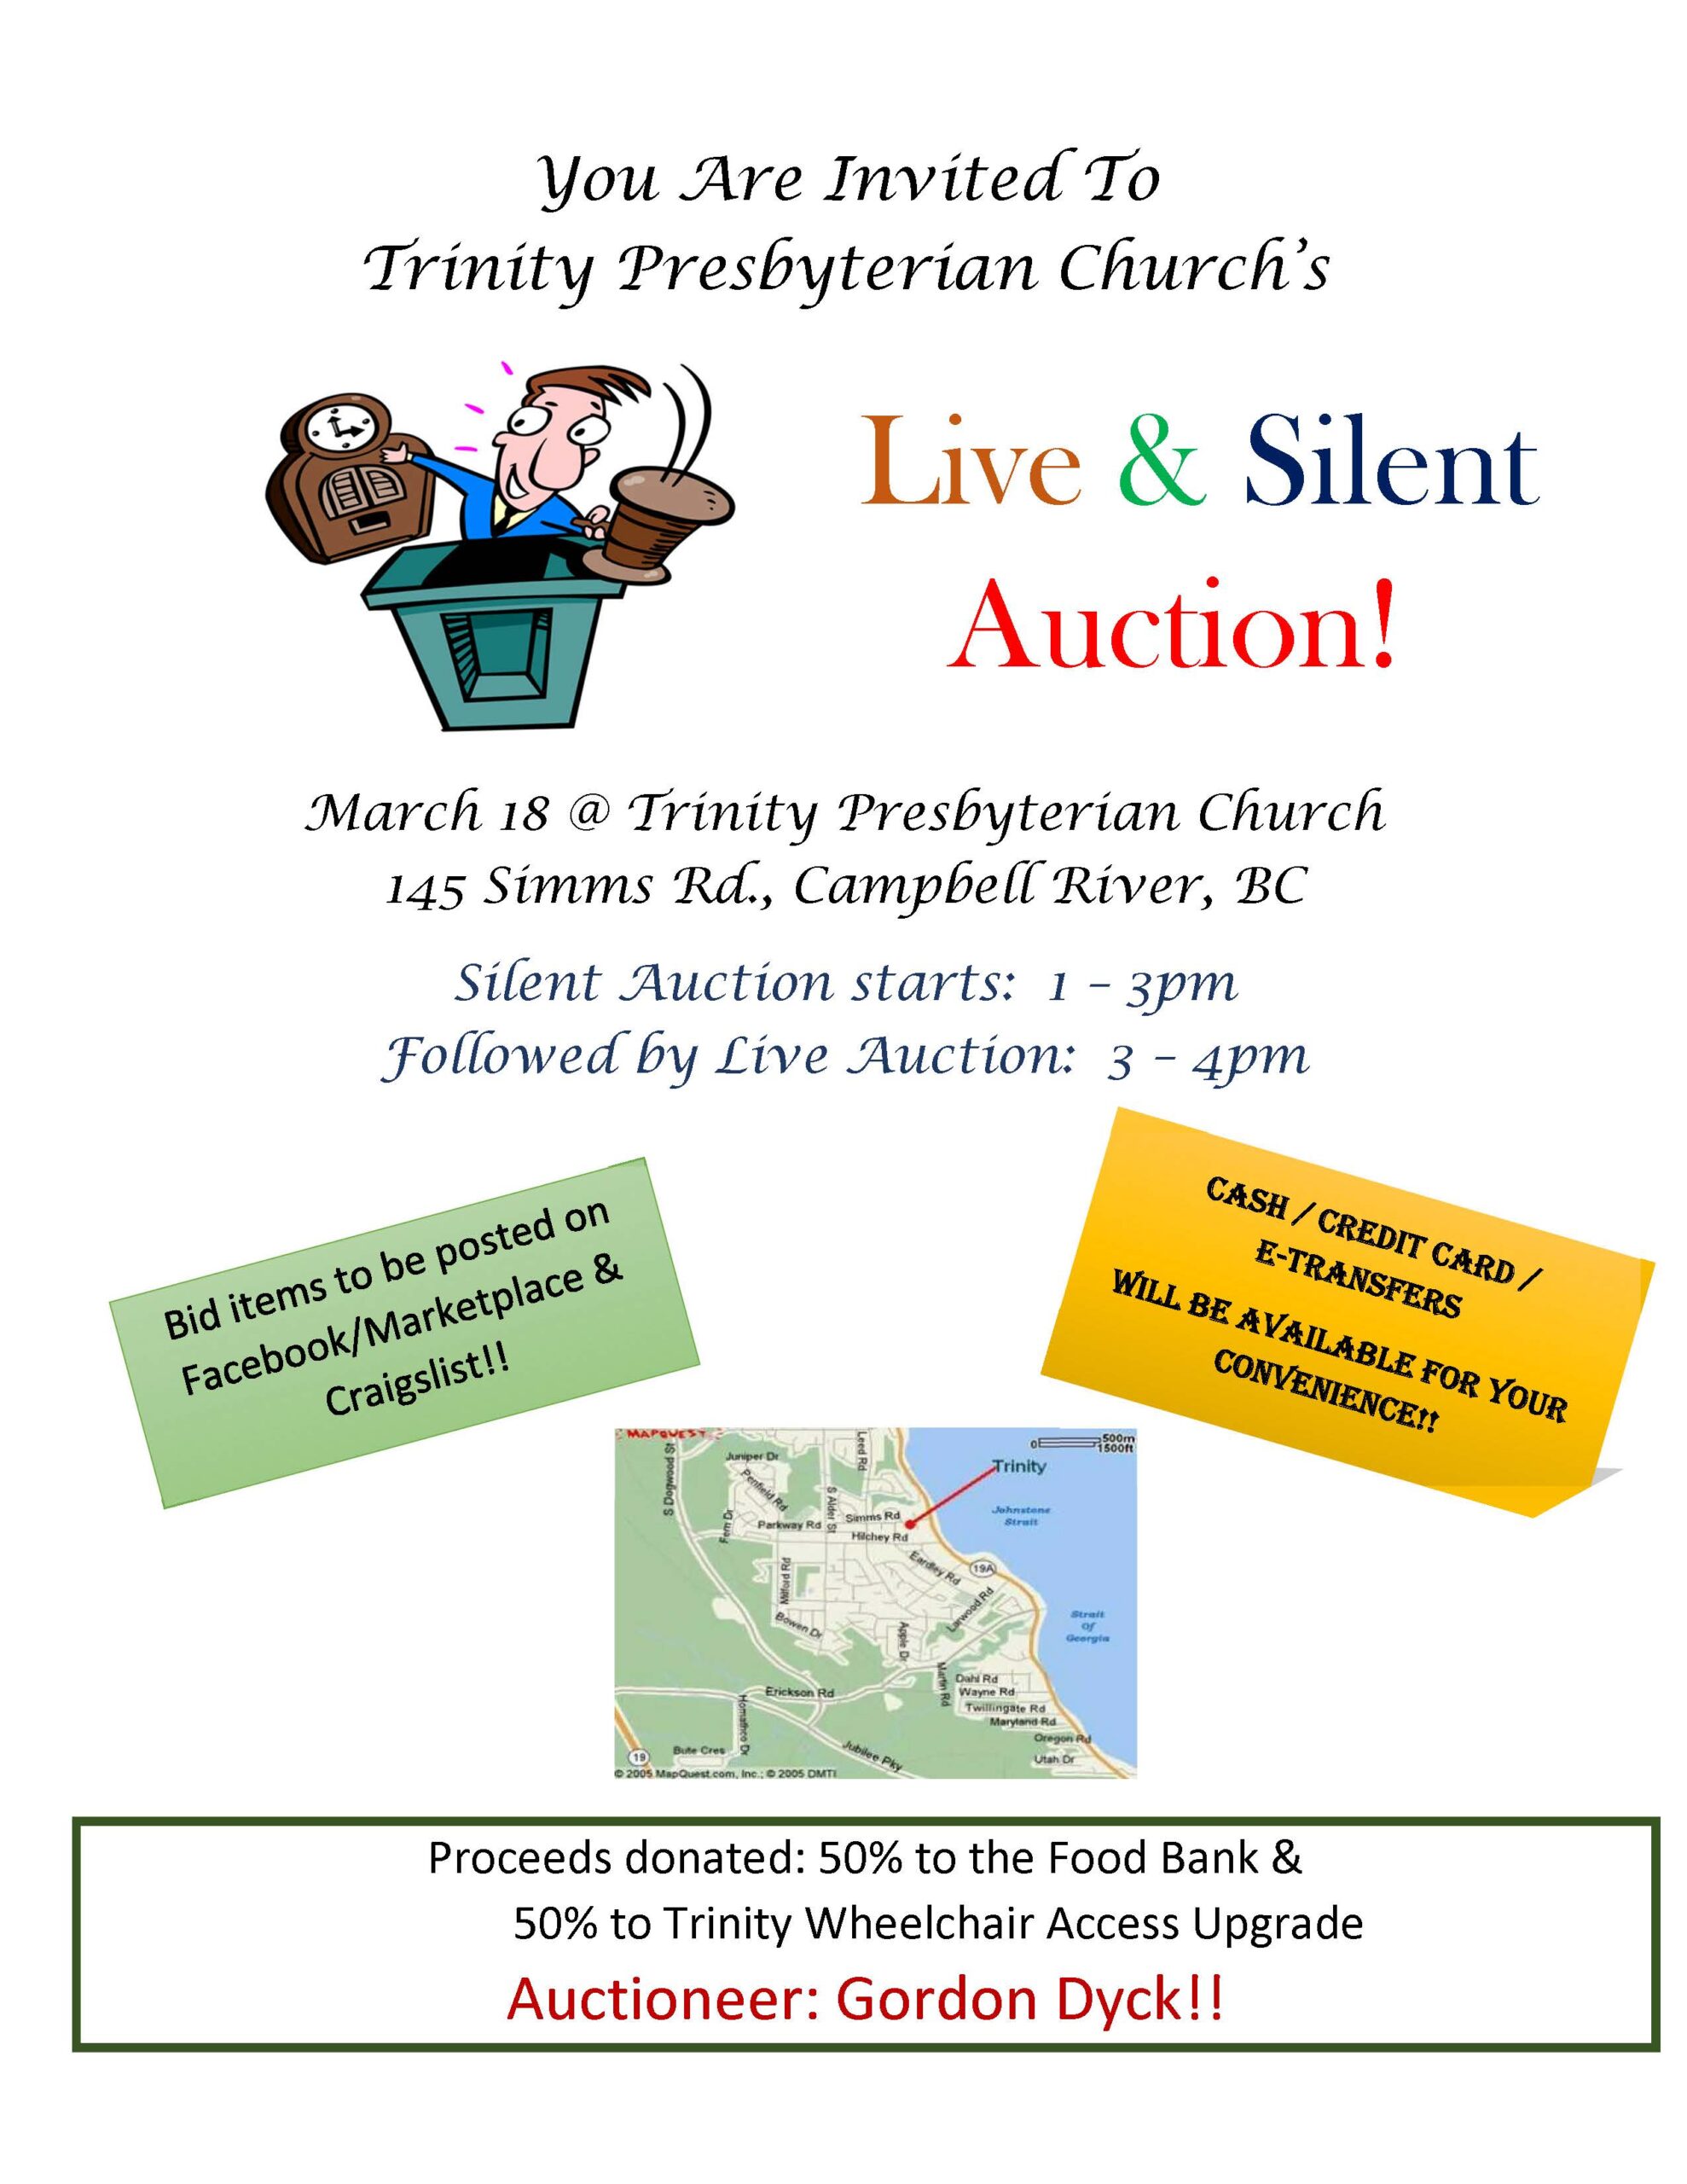 Trinity Presbyterian Church’s Live & Silent Auction!